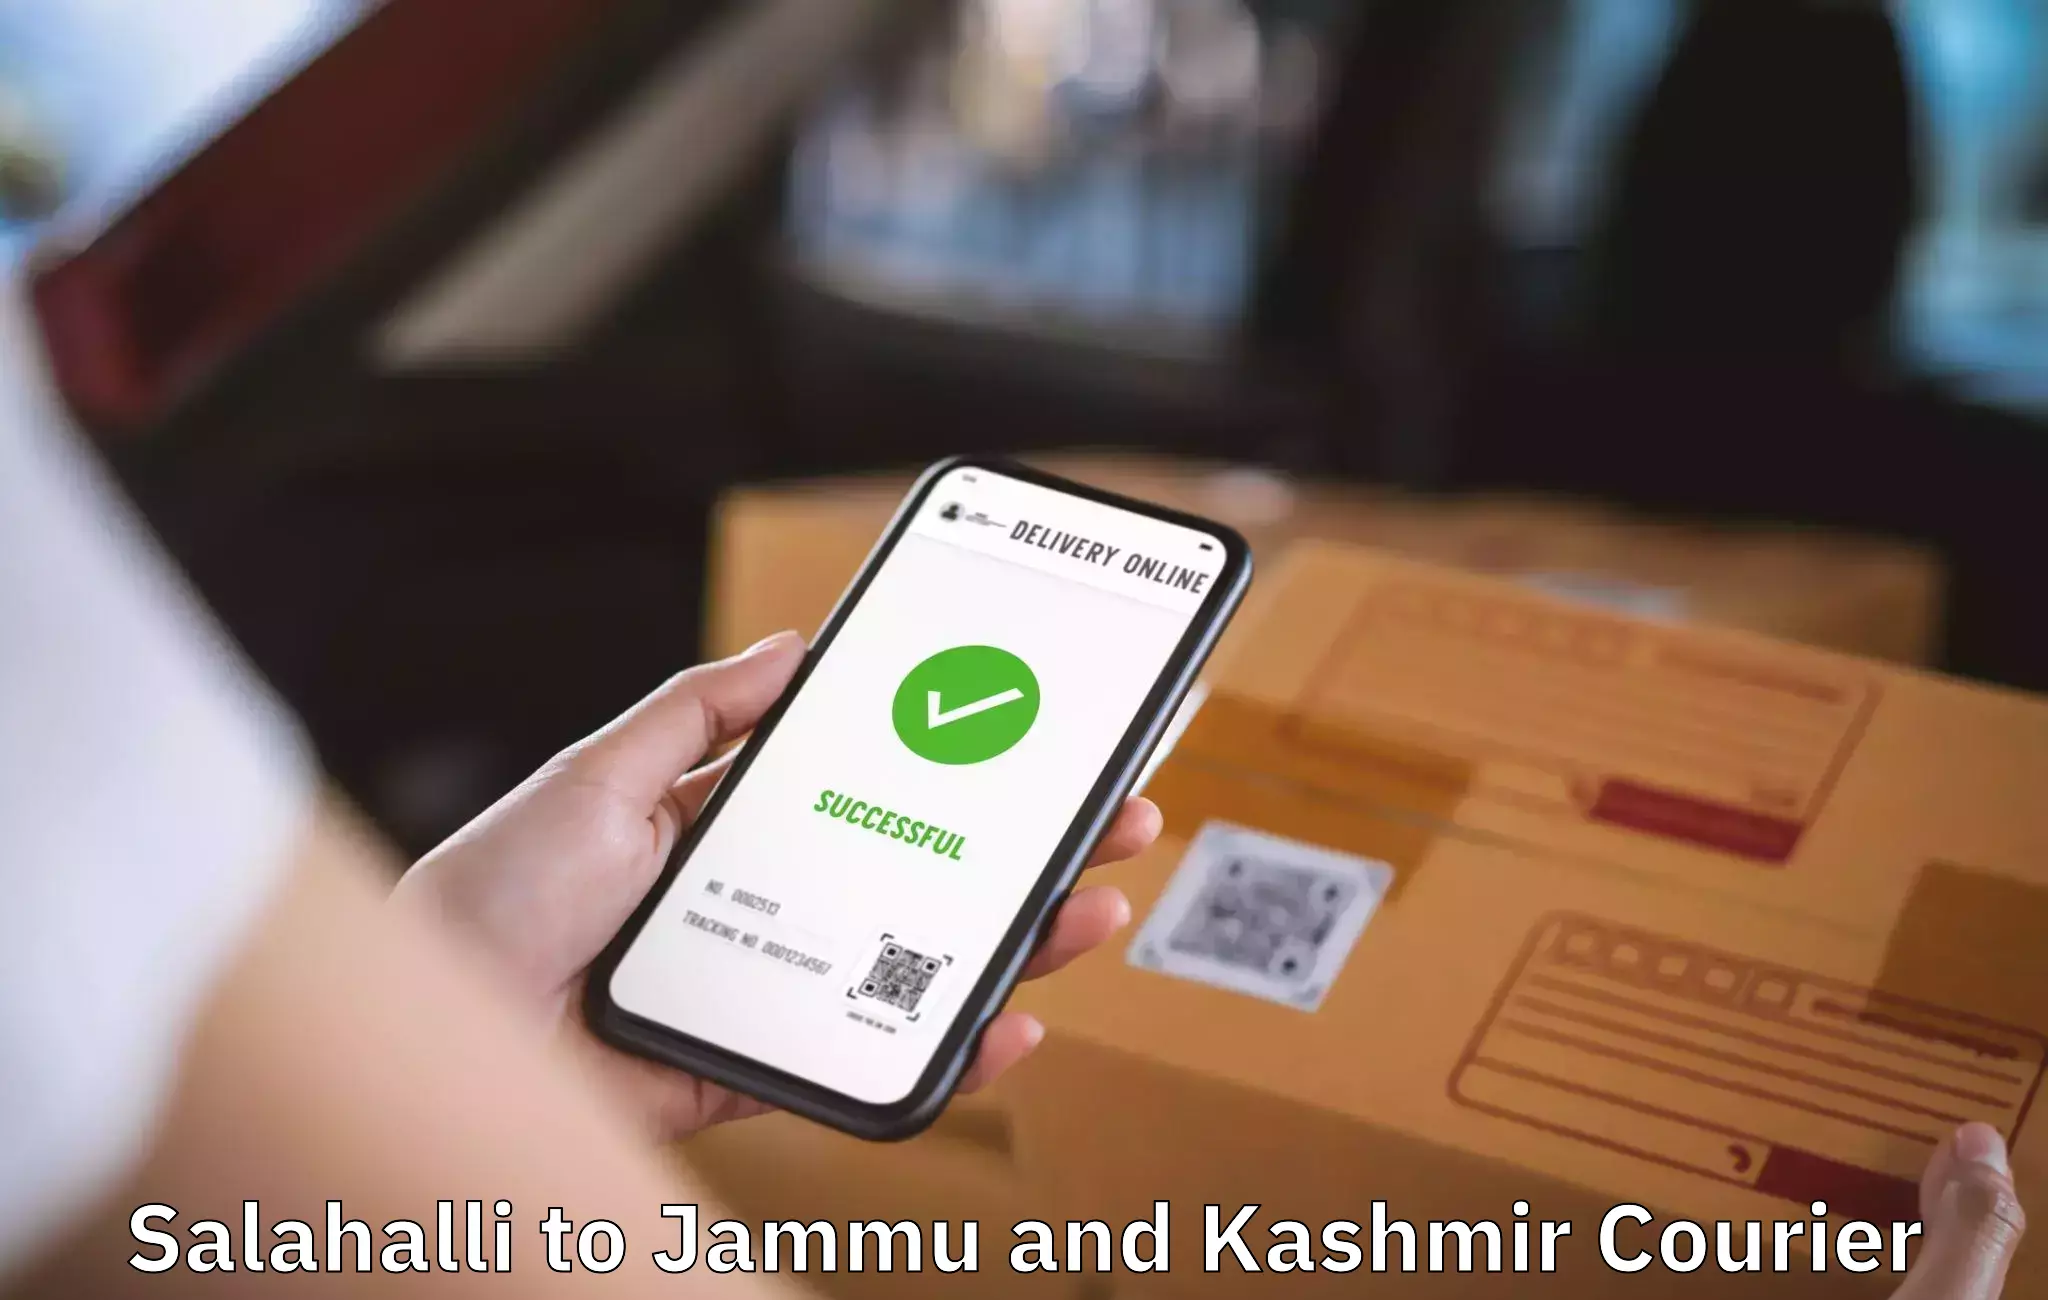 Professional packing and transport Salahalli to Jammu and Kashmir